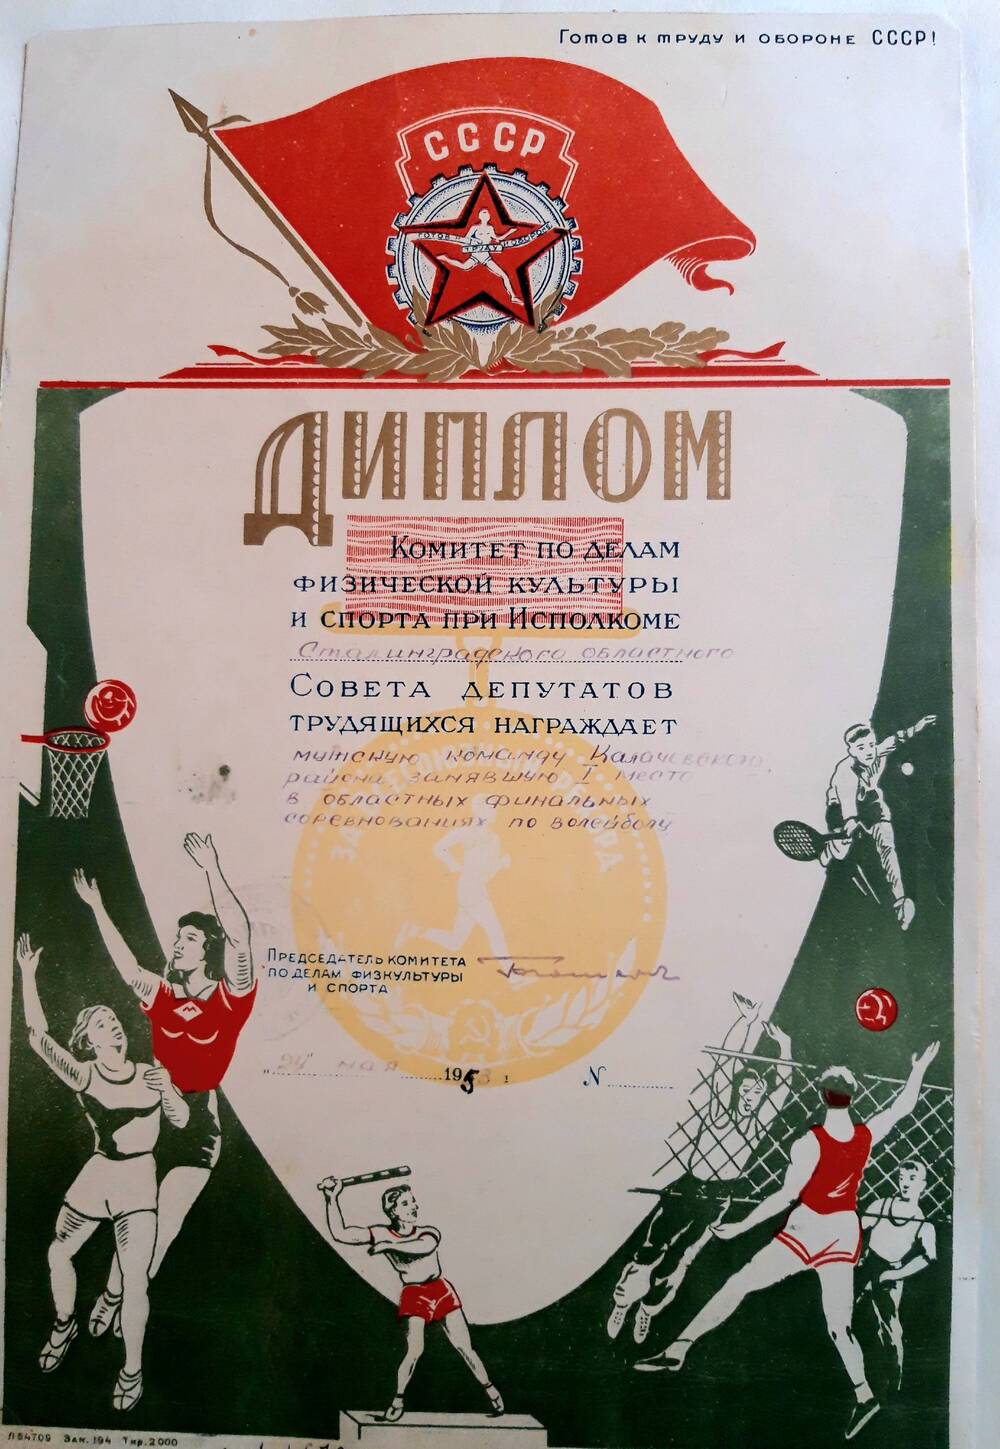 Диплом мужской команды  Калачевского района, занявшей I место в областных финальных соревнованиях по волейболу.  г. Сталинград, 24.05.1953